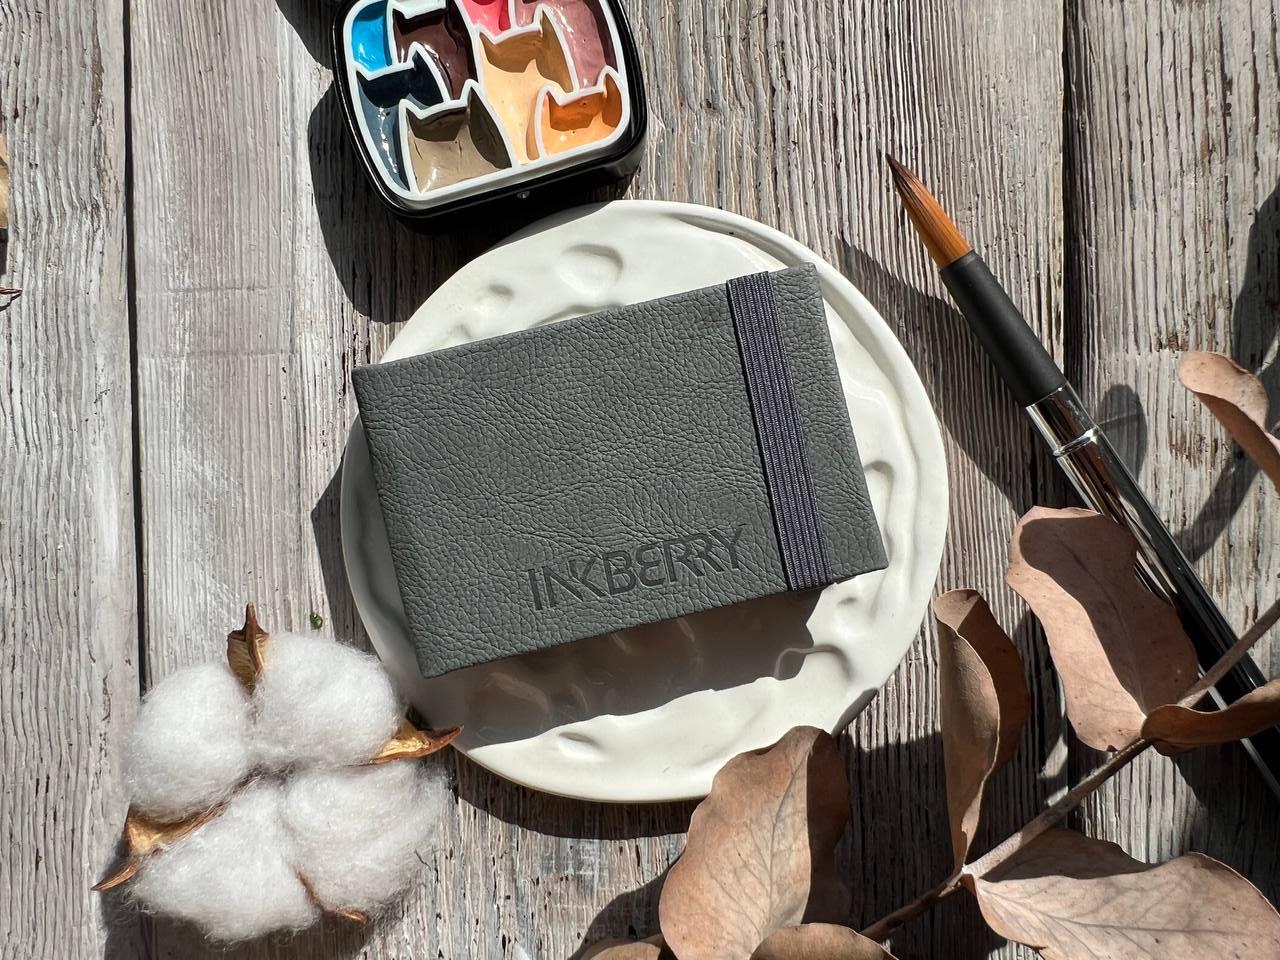 Скетчбук для акварели Inkberry 5х8 см 30 л 230 г 50% хлопка, серый Inkberry-iBmini-58-13